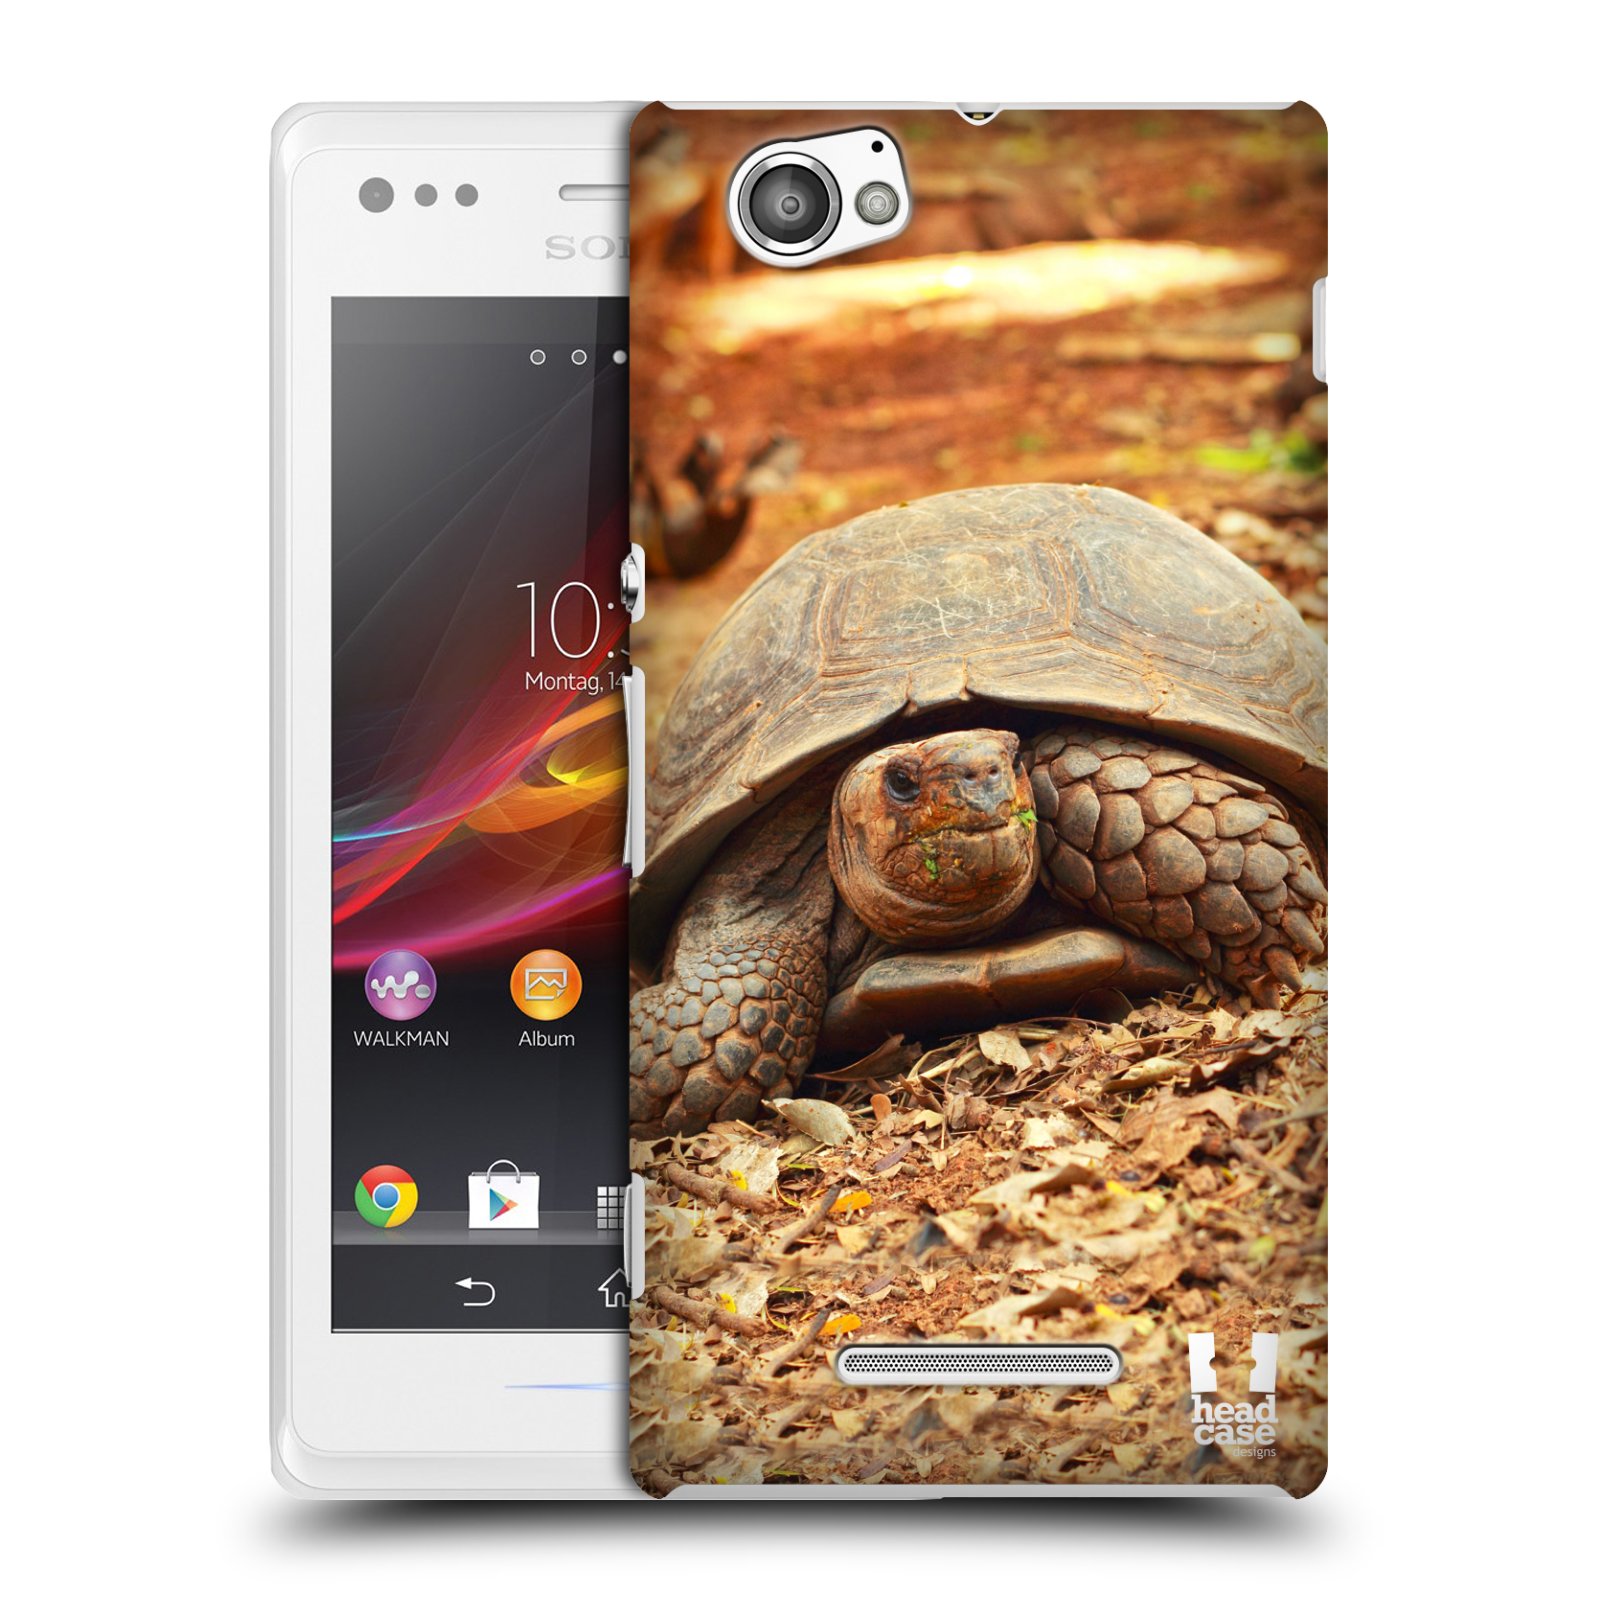 HEAD CASE plastový obal na mobil Sony Xperia M vzor slavná zvířata foto želva